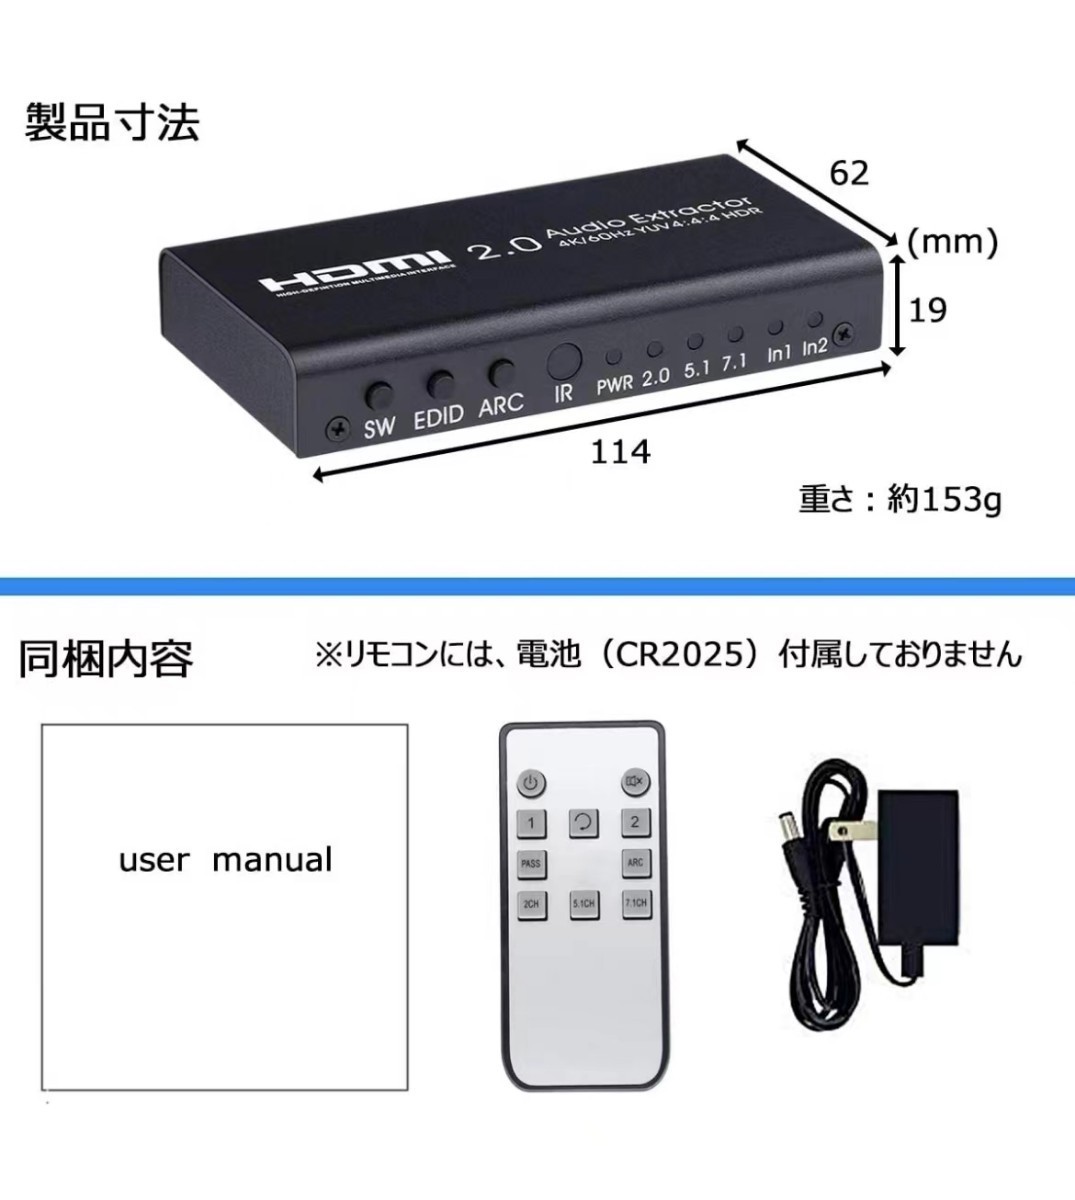 HDMI 切替器 音声分離器 4K/60Hz HDR対応 2入力1出力